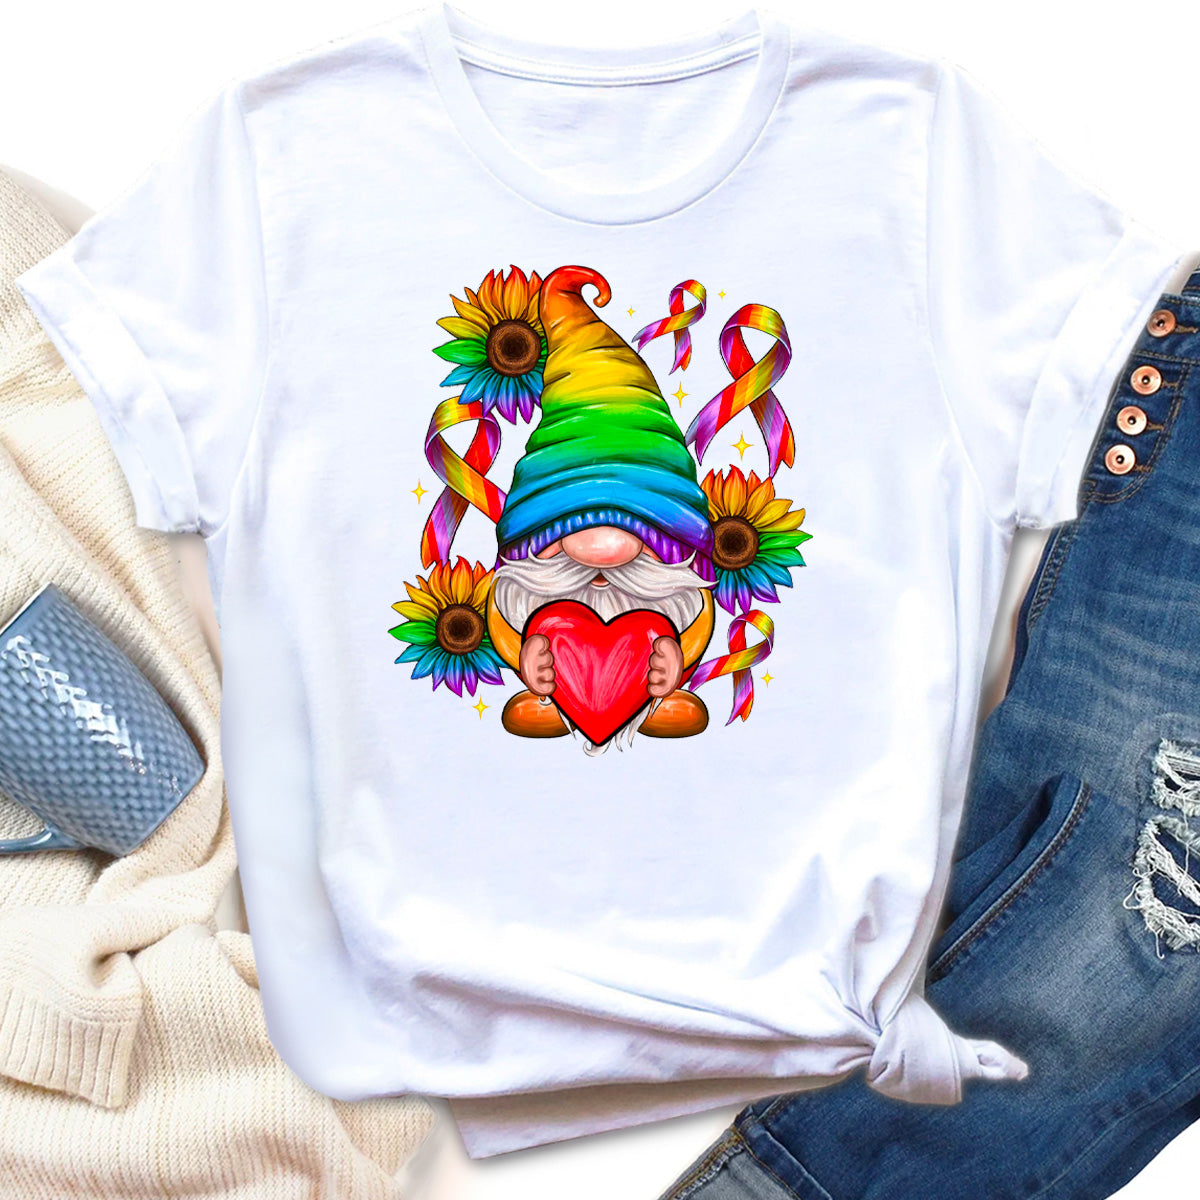 LGBTQ+ Love Is Love T-Shirt